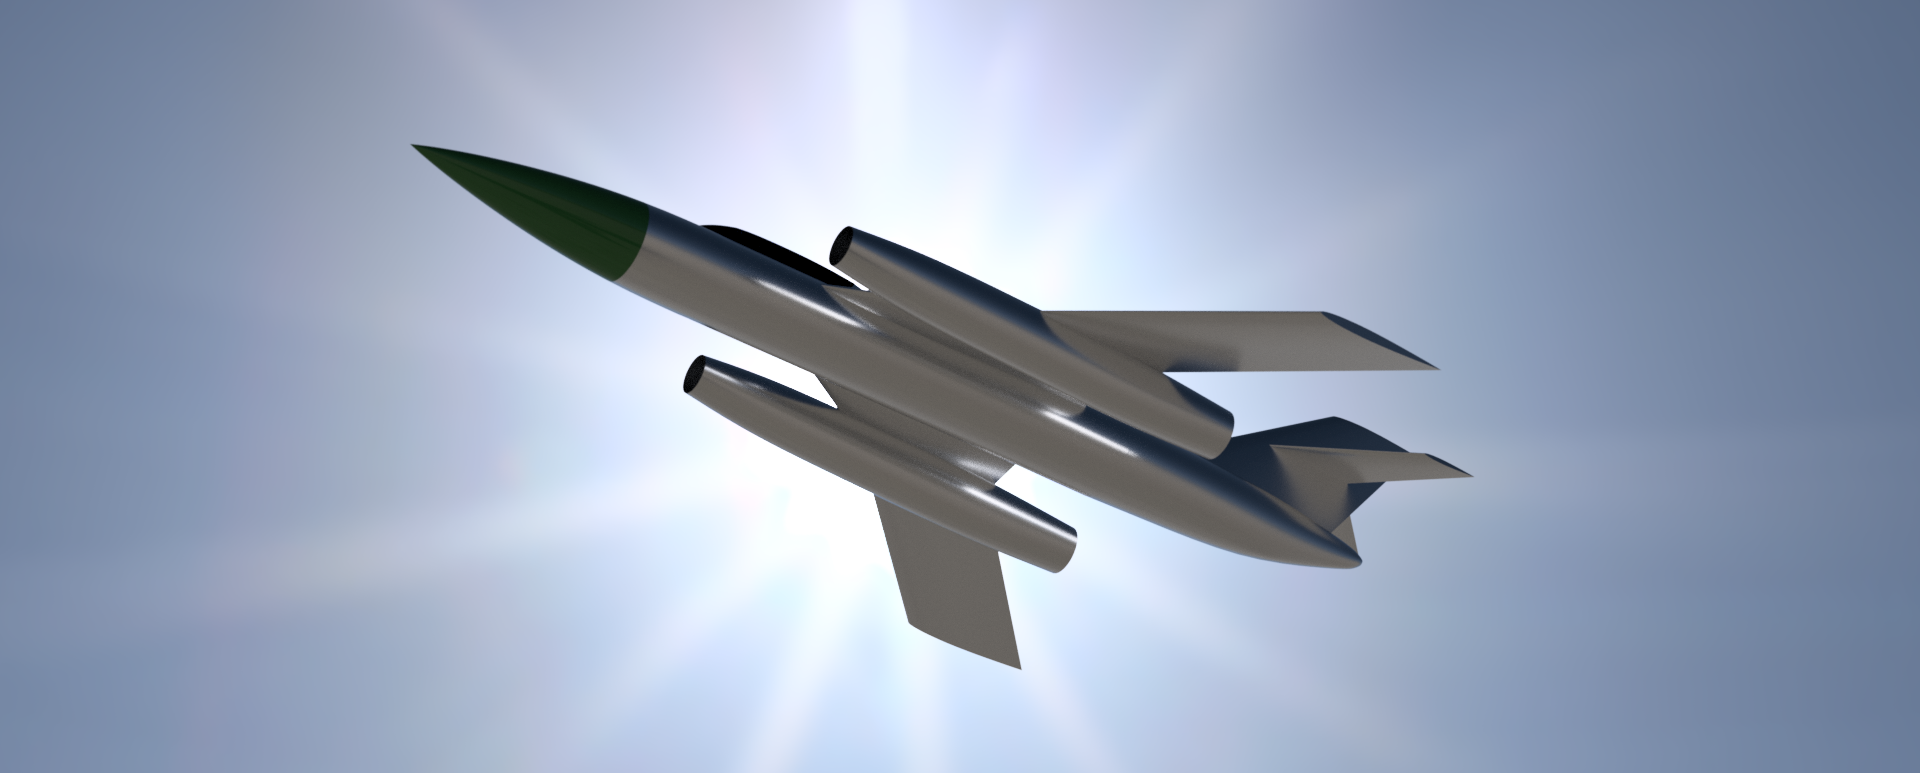 X-44 Firebar 004.png